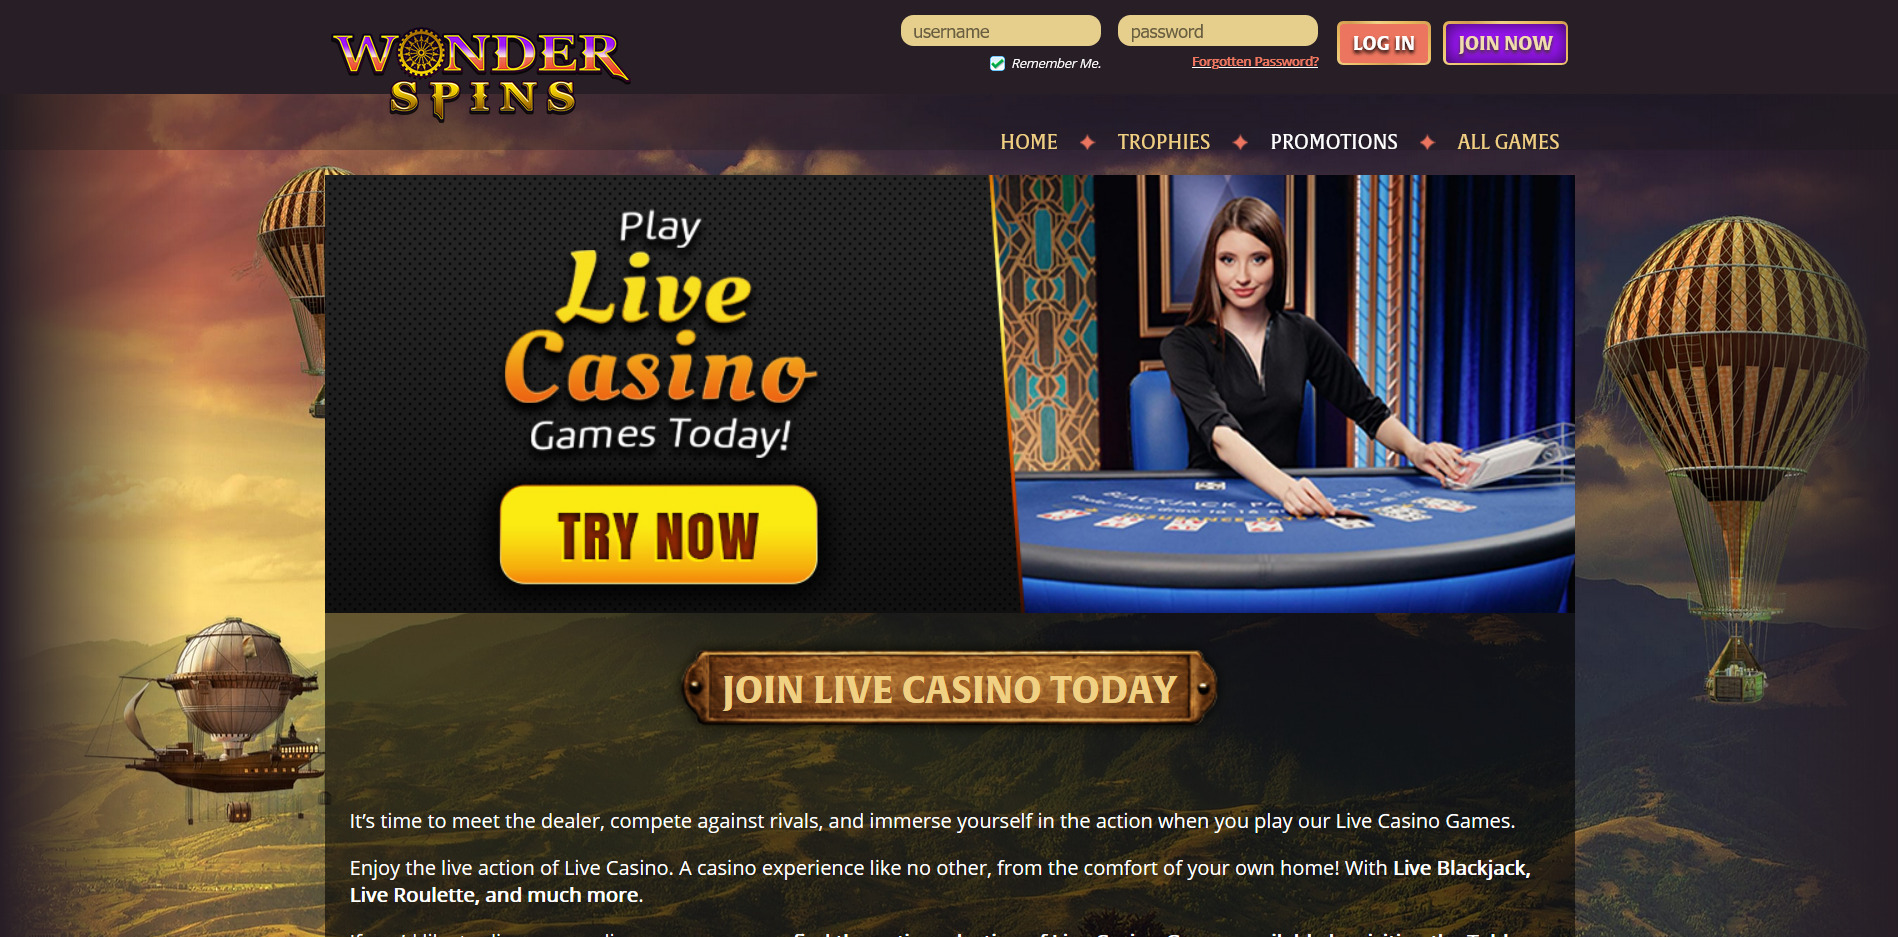 Wonder Spins Casino Live Dealer Games